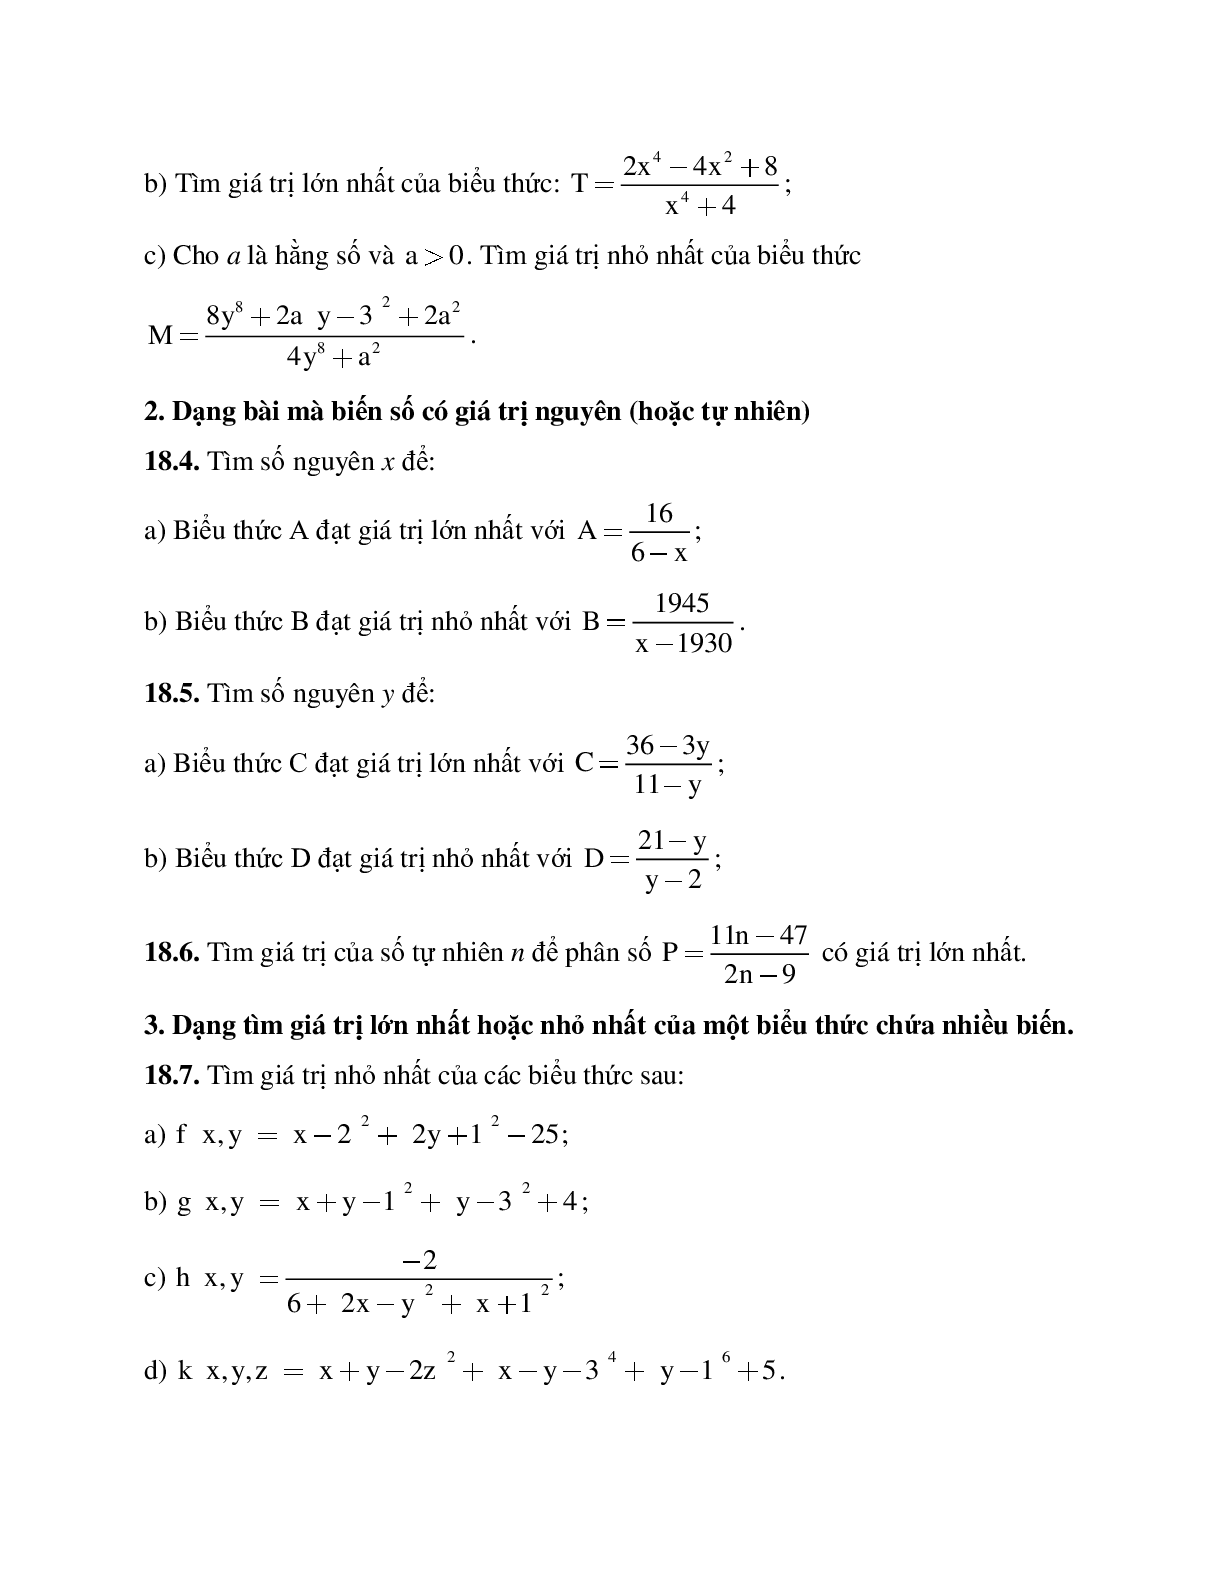 Hệ thống bài tập về Giá trị lớn nhất - Giá trị nhỏ nhất của một biểu thức đại số có lời giải (trang 10)